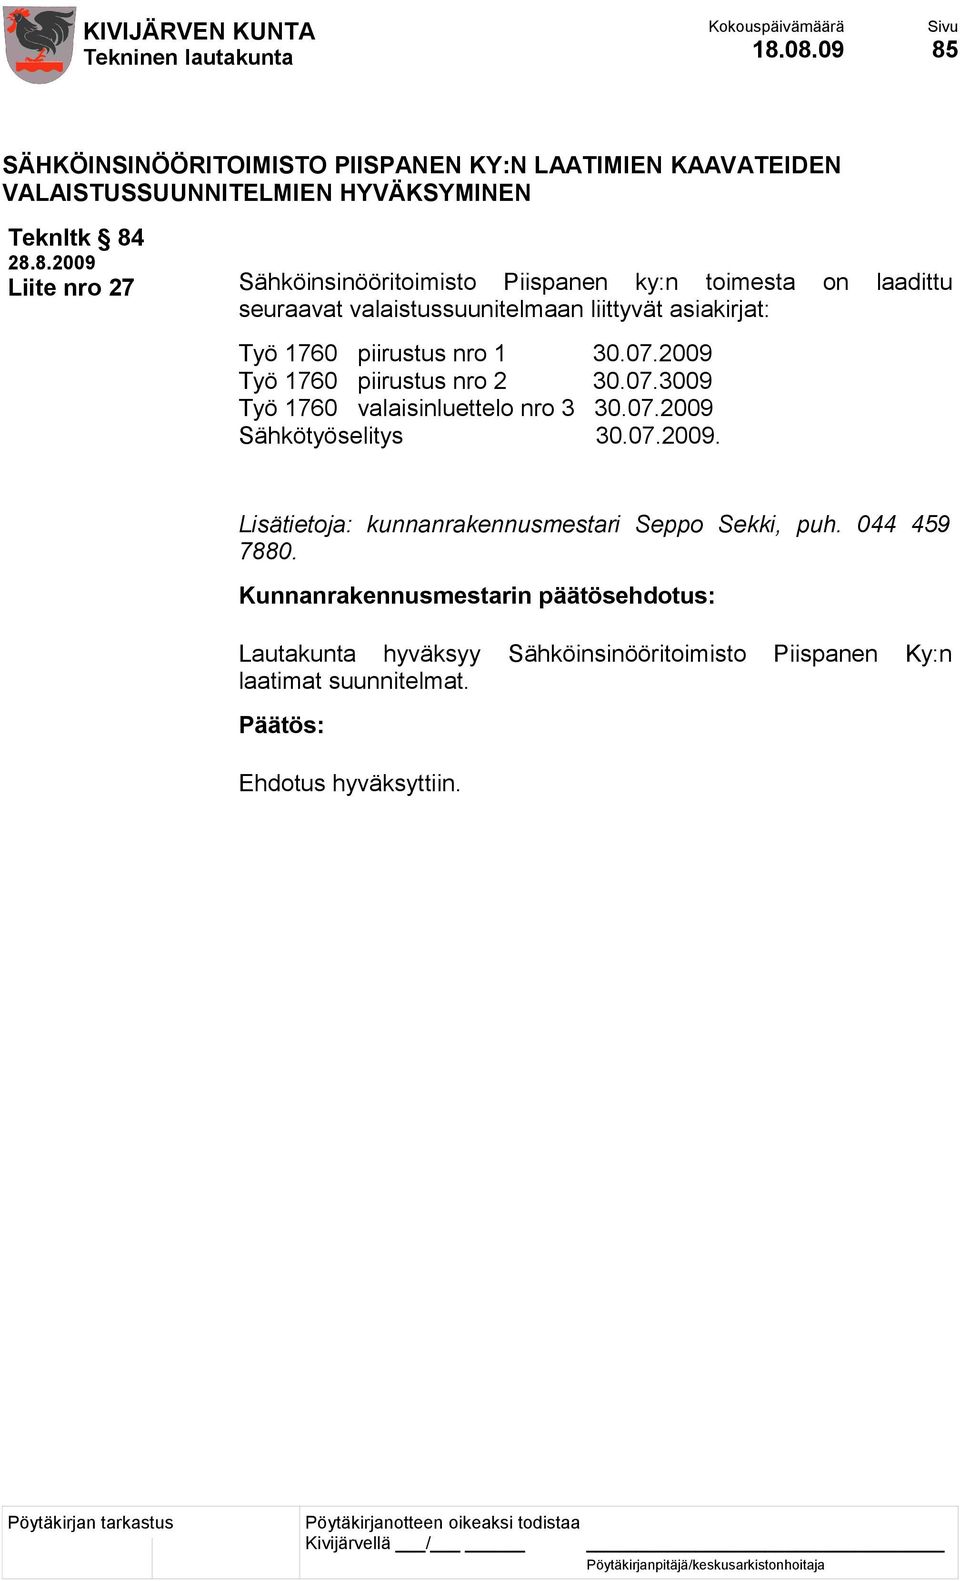 07.2009 Työ 1760 piirustus nro 2 30.07.3009 Työ 1760 valaisinluettelo nro 3 30.07.2009 Sähkötyöselitys 30.07.2009. Lisätietoja: kunnanrakennusmestari Seppo Sekki, puh.